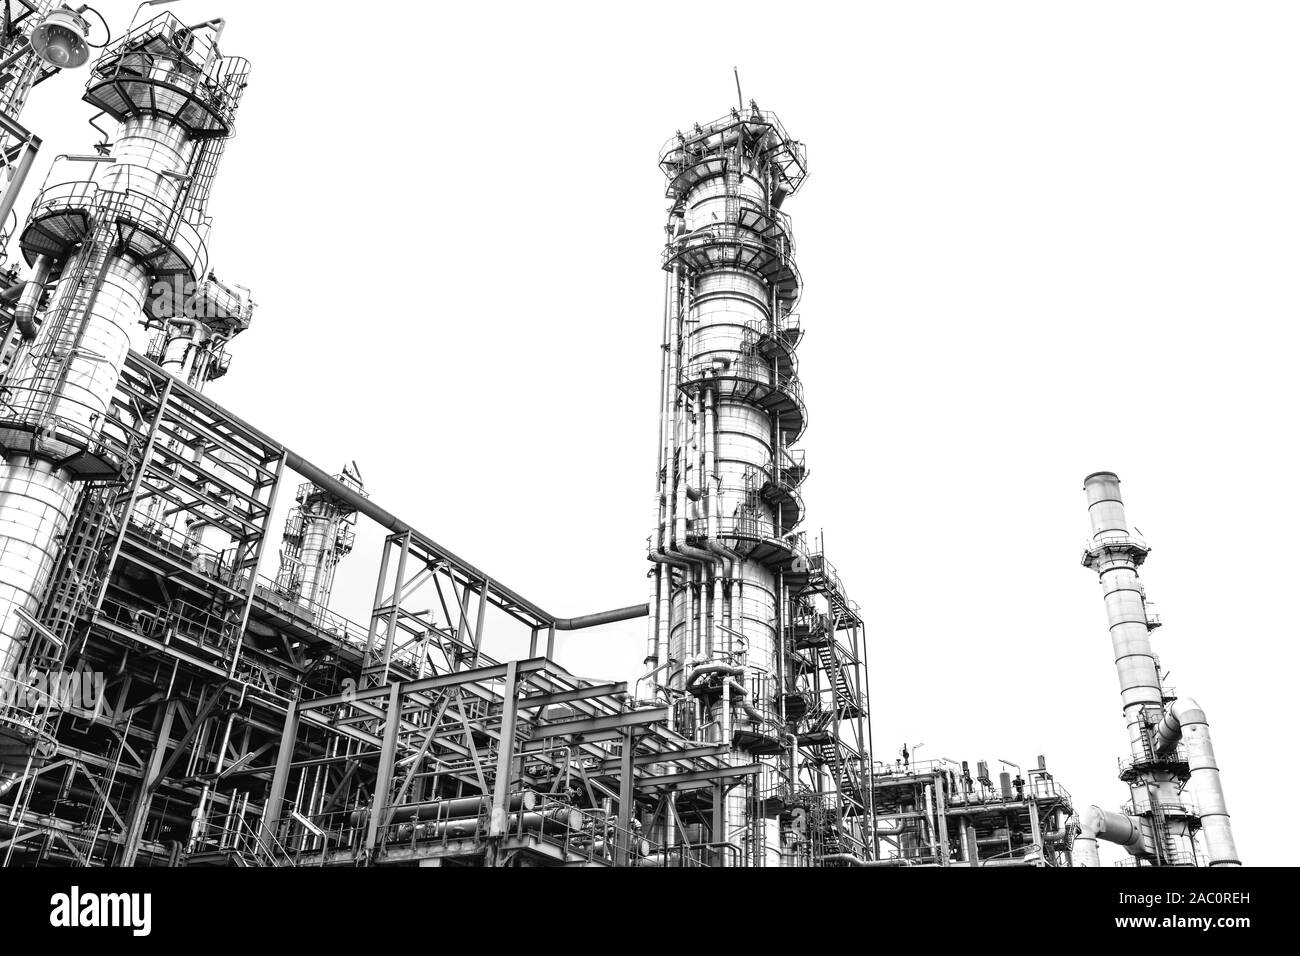 Close-up de la raffinerie de pétrole et de gaz industriels zone,Détail de l'oléoduc de l'équipement en acier avec des soupapes sur-off réduire la pression dans la production à refin Banque D'Images